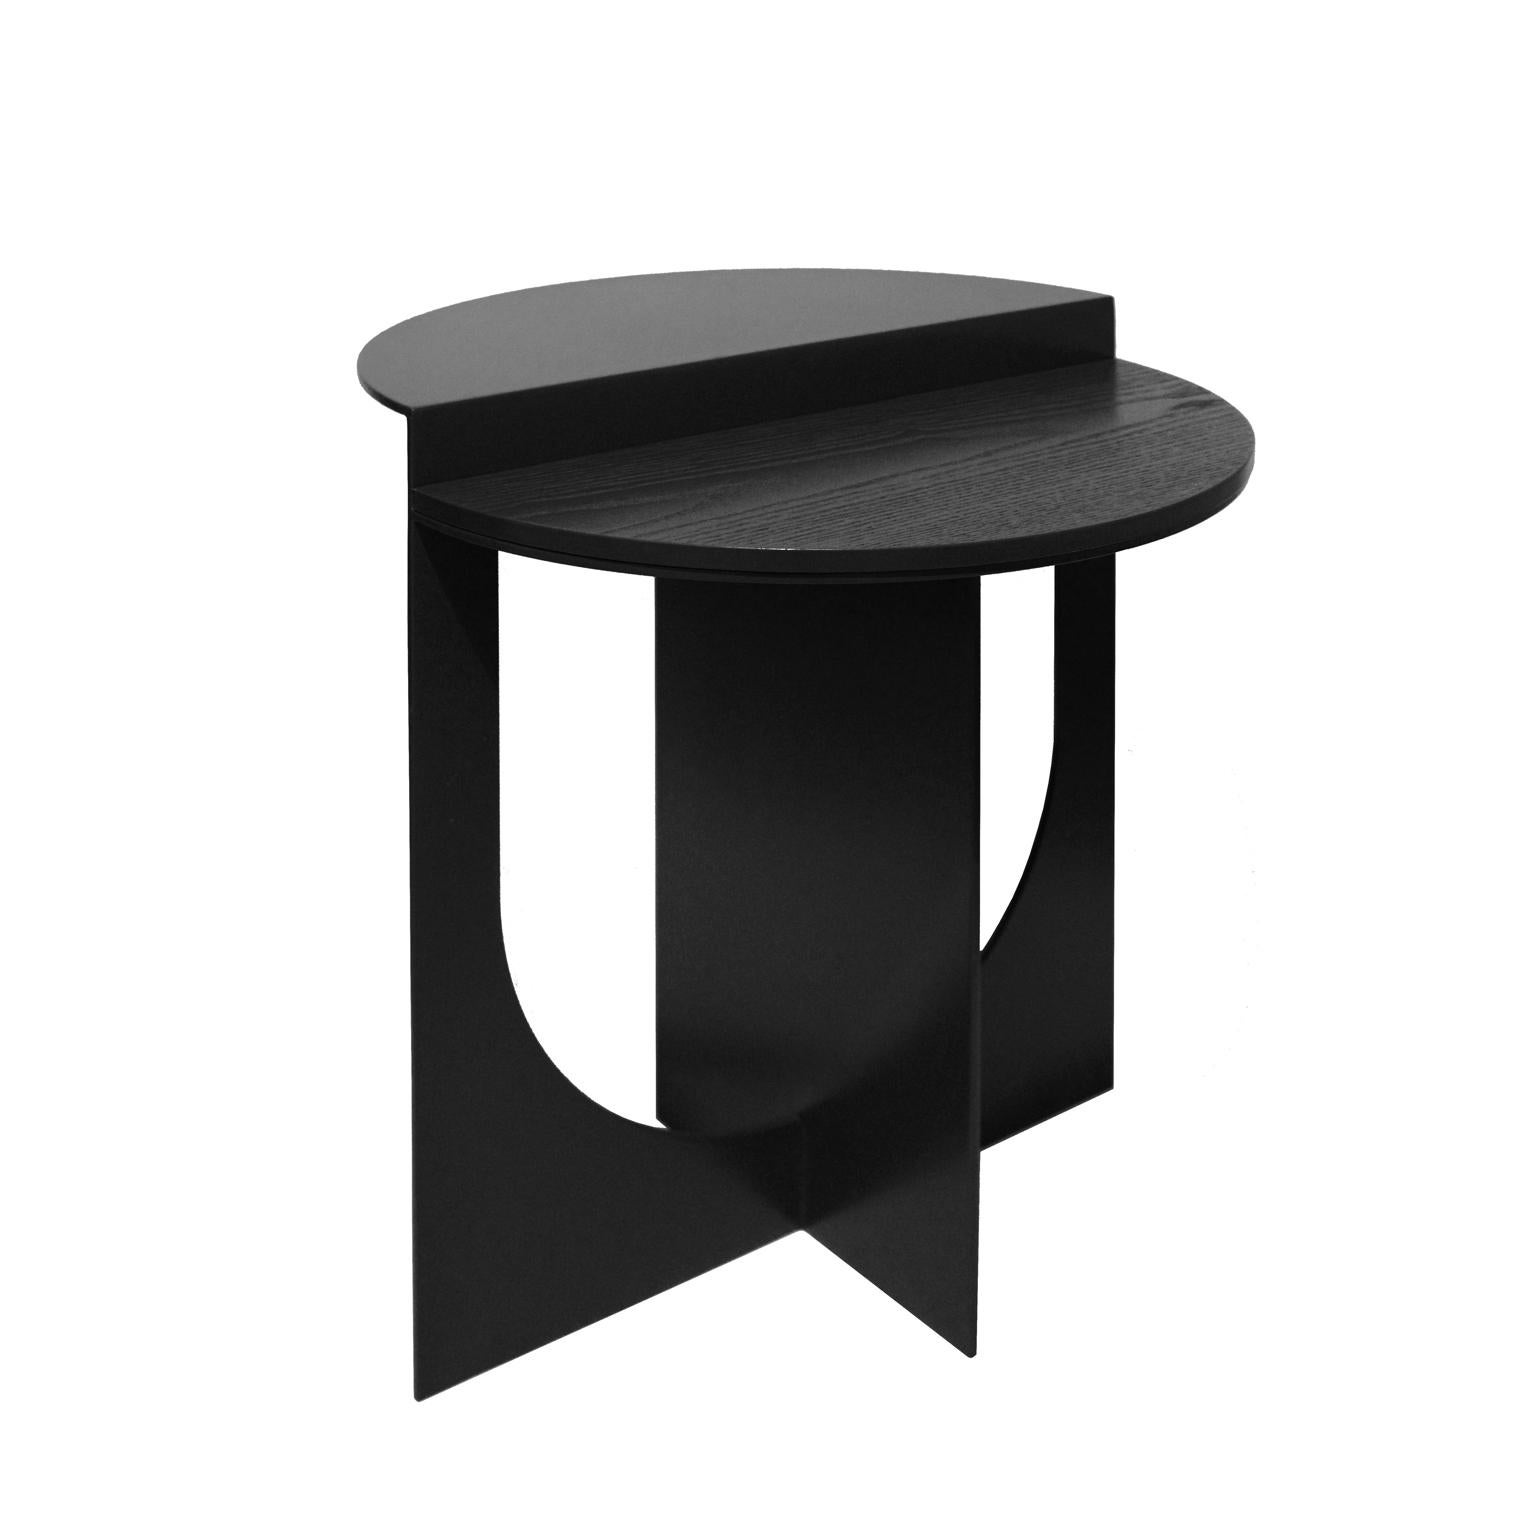 Plus a été créé dans un but précis. Positivité.
La table d'appoint Plus peut être utilisée pour créer des compositions d'intérieur dynamiques.
Le plateau peut être fabriqué en bois, en verre ou en marbre.
     